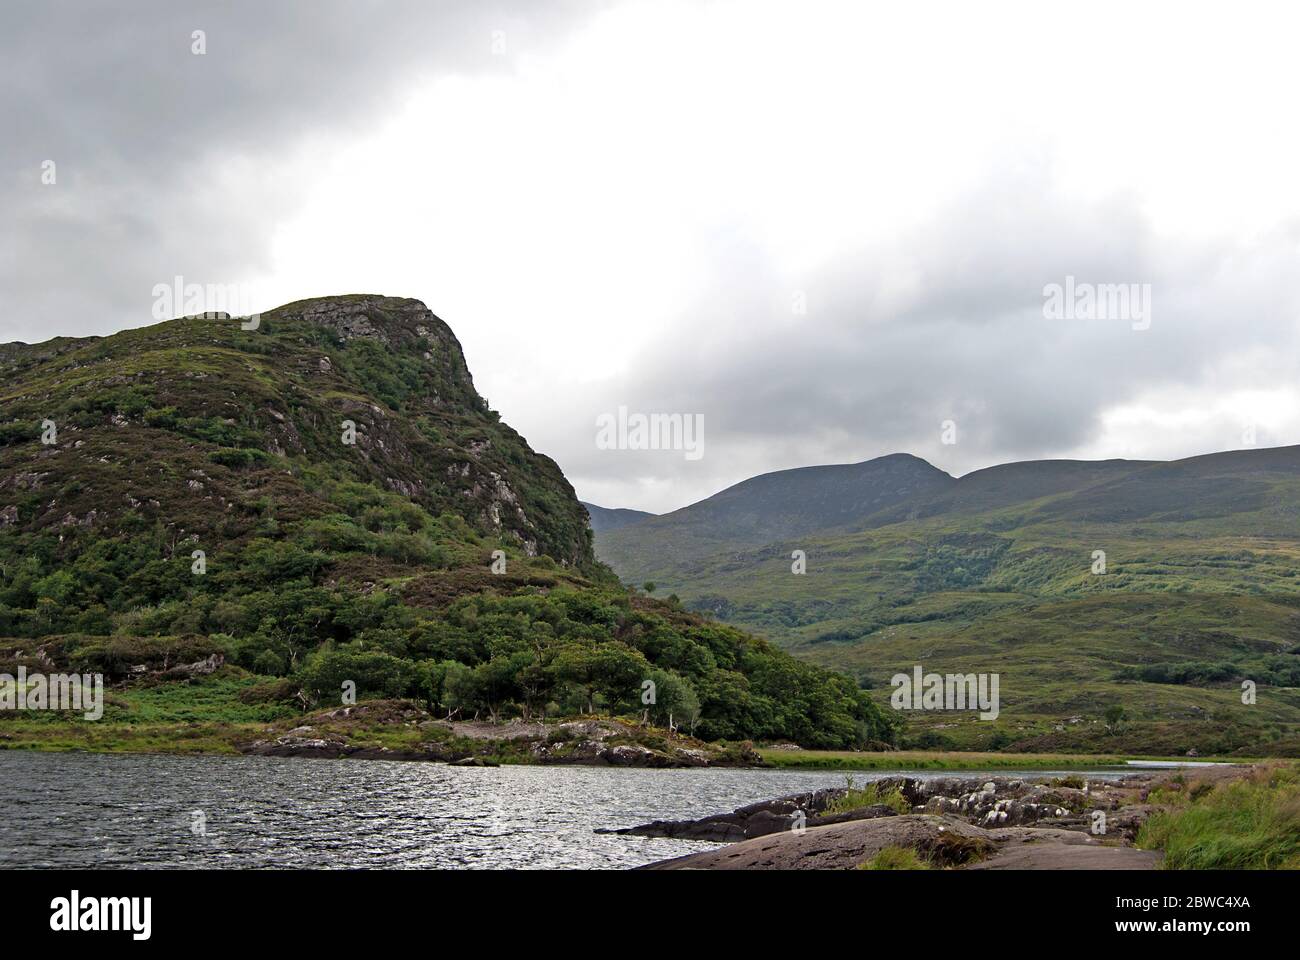 Lake in the Killarney National Park, Ireland Stock Photo